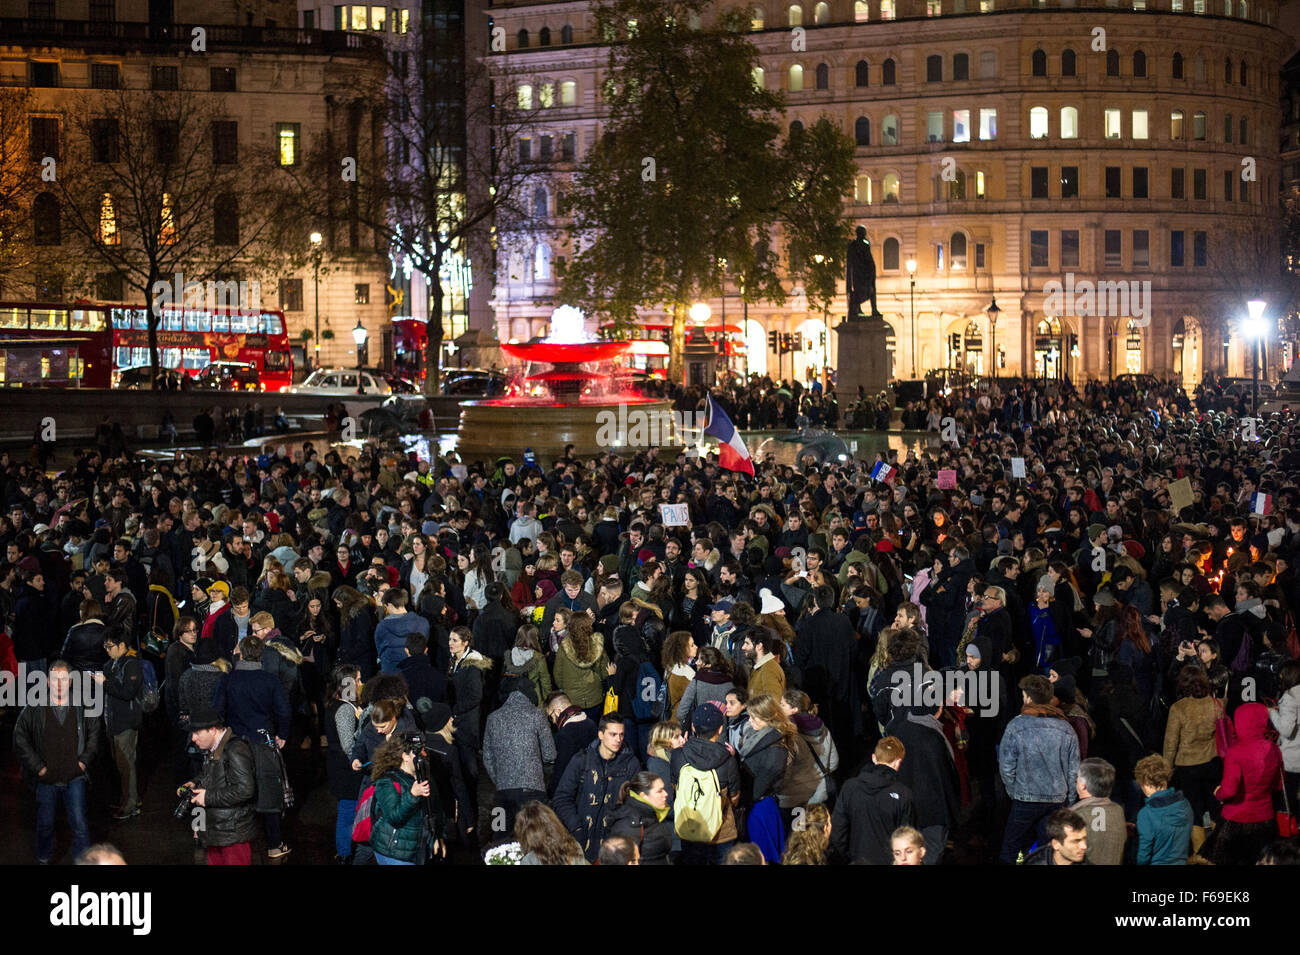 Londres, Royaume-Uni. 14 novembre, 2015. Des milliers de personnes se rassemblent à Trafalgar Square pour une veillée aux chandelles en solidarité avec les victimes d'attaques terroristes de la nuit dernière à Paris. La National Portrait Gallery est éclairé avec les couleurs de l'indicateur Tricolore Français. Banque D'Images